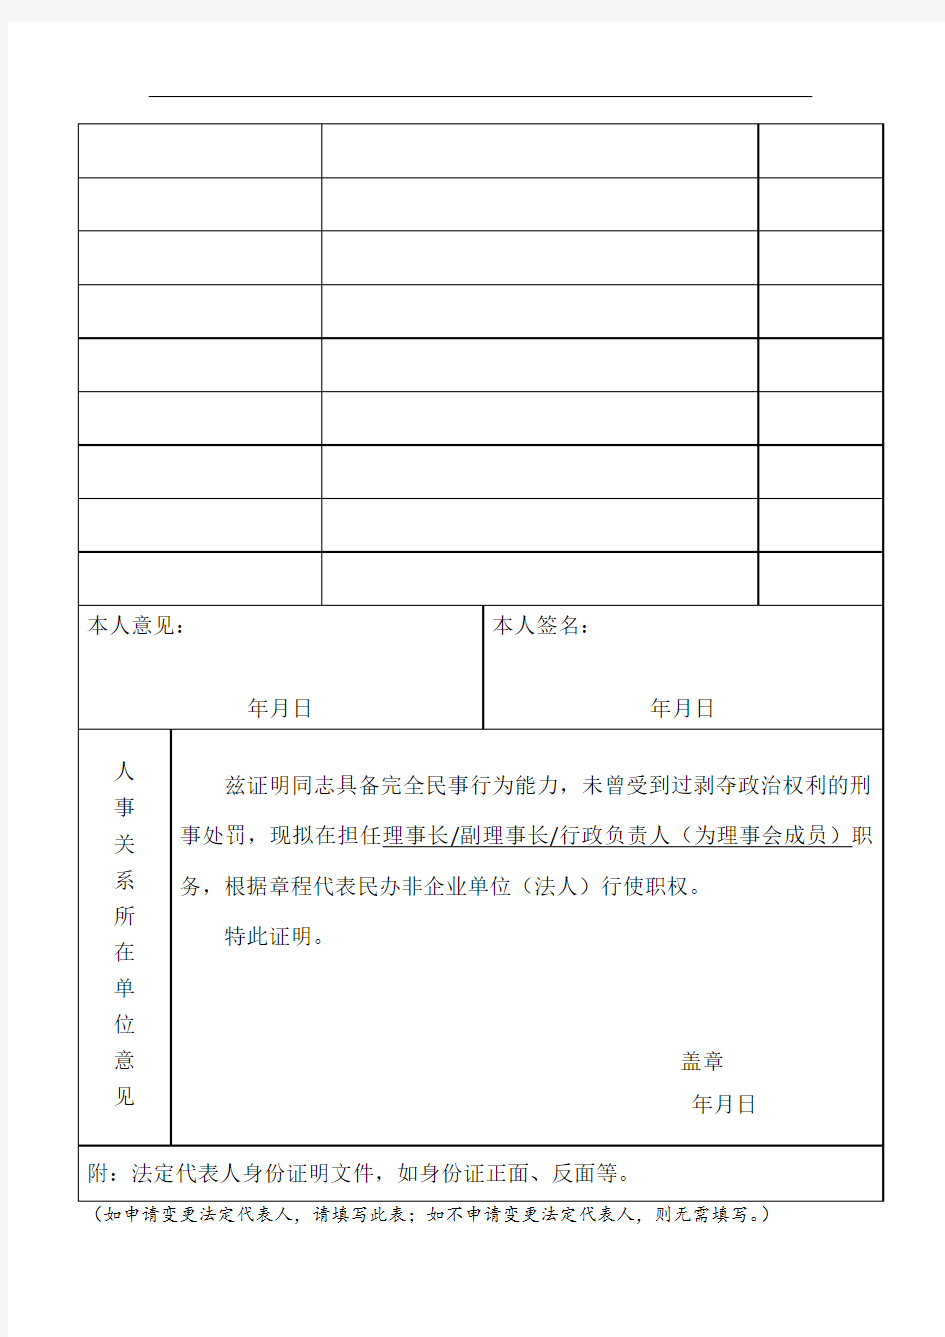 民办非企业单位法定代表人登记表